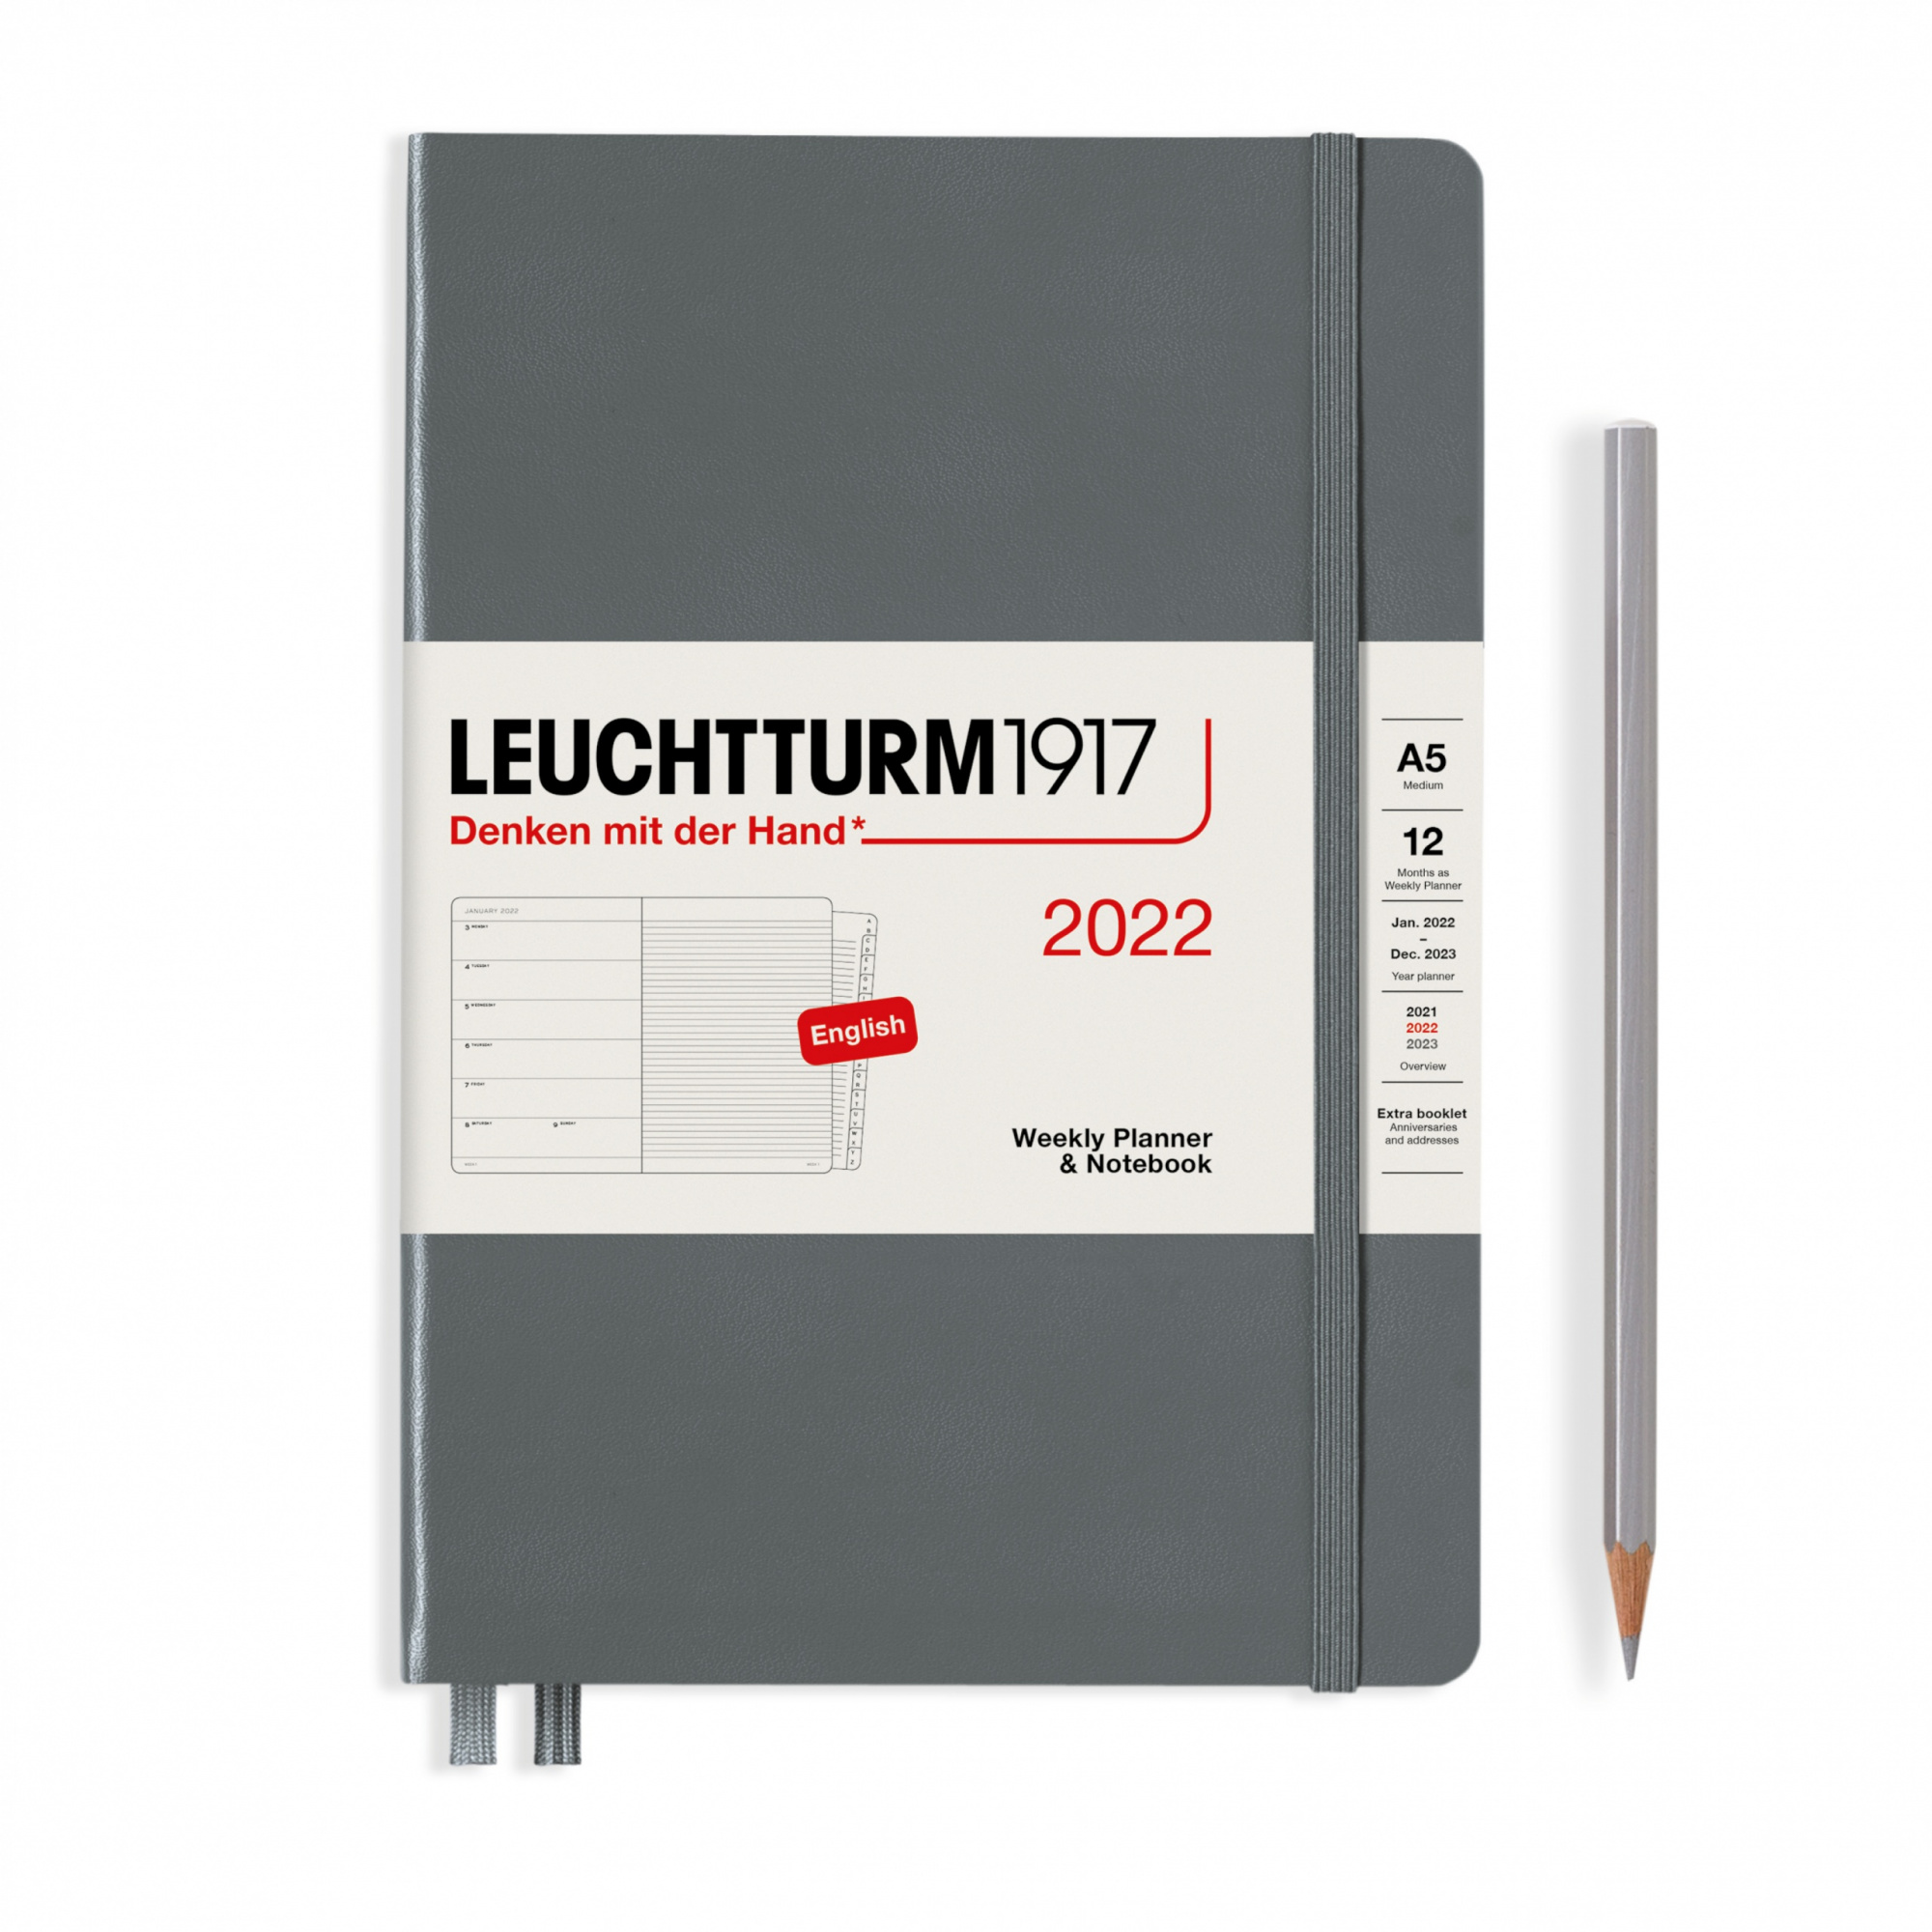 Еженедельник 2022 А5 Leuchtturm с записной книжкой + доп. буклет, антрацит